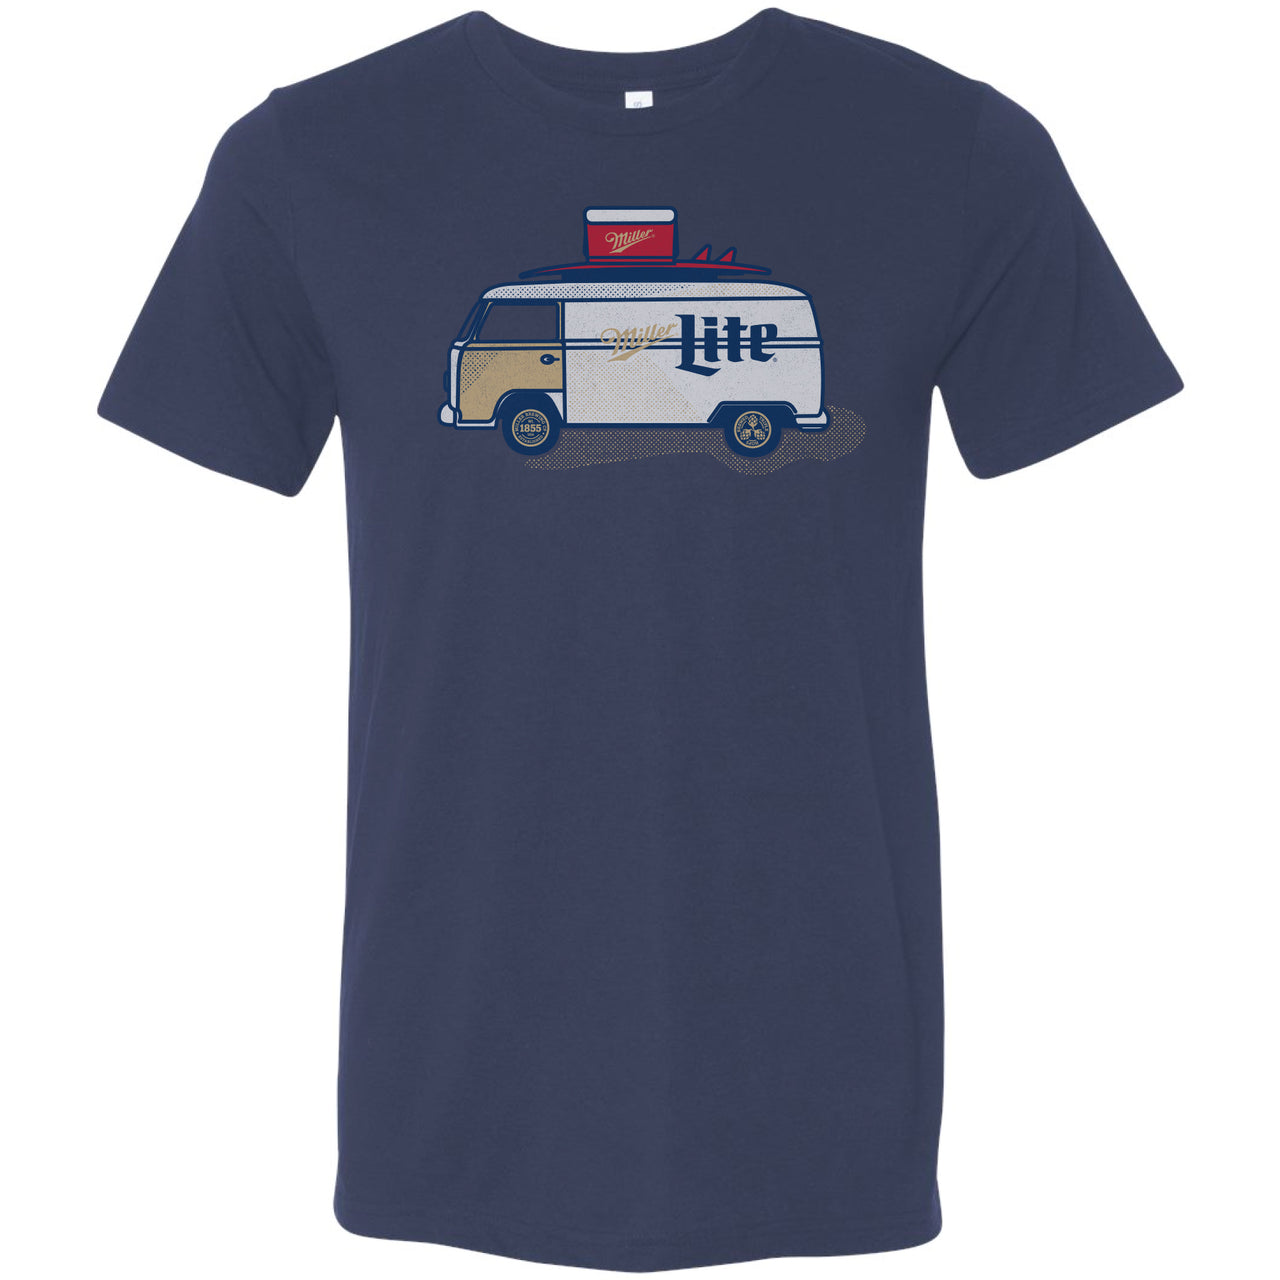 Miller Lite Cooler Van T-Shirt